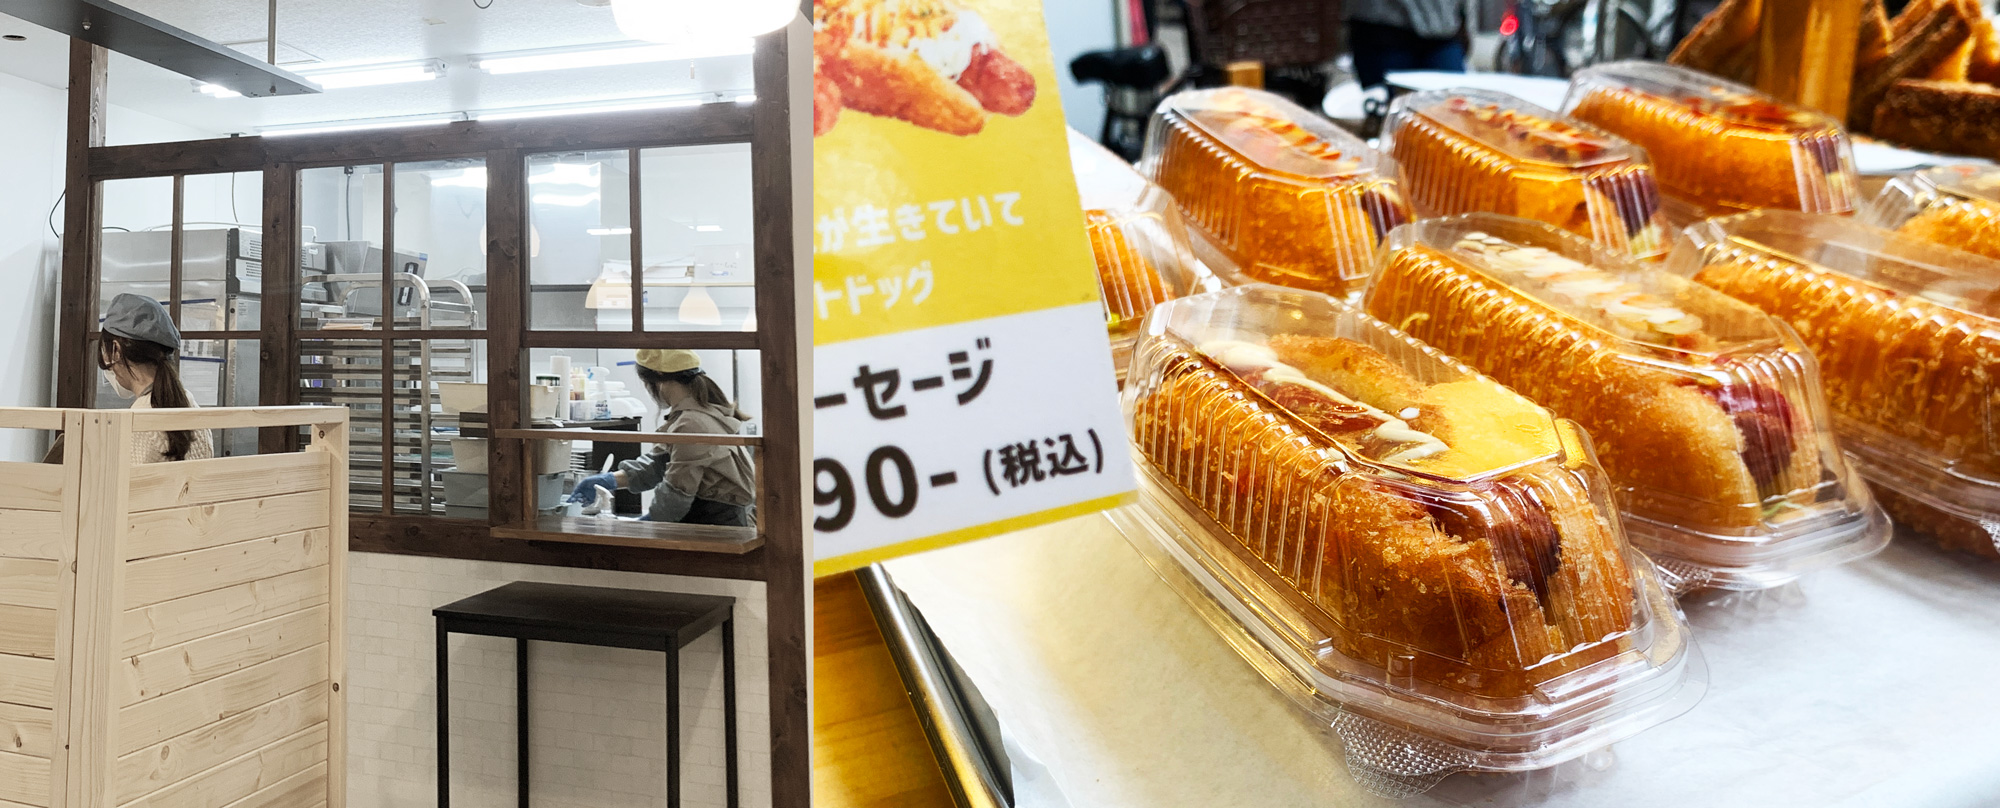 ソンカネのクァベギ・揚げサンドイッチは毎日丁寧にお店で手づくり。ソンカネ